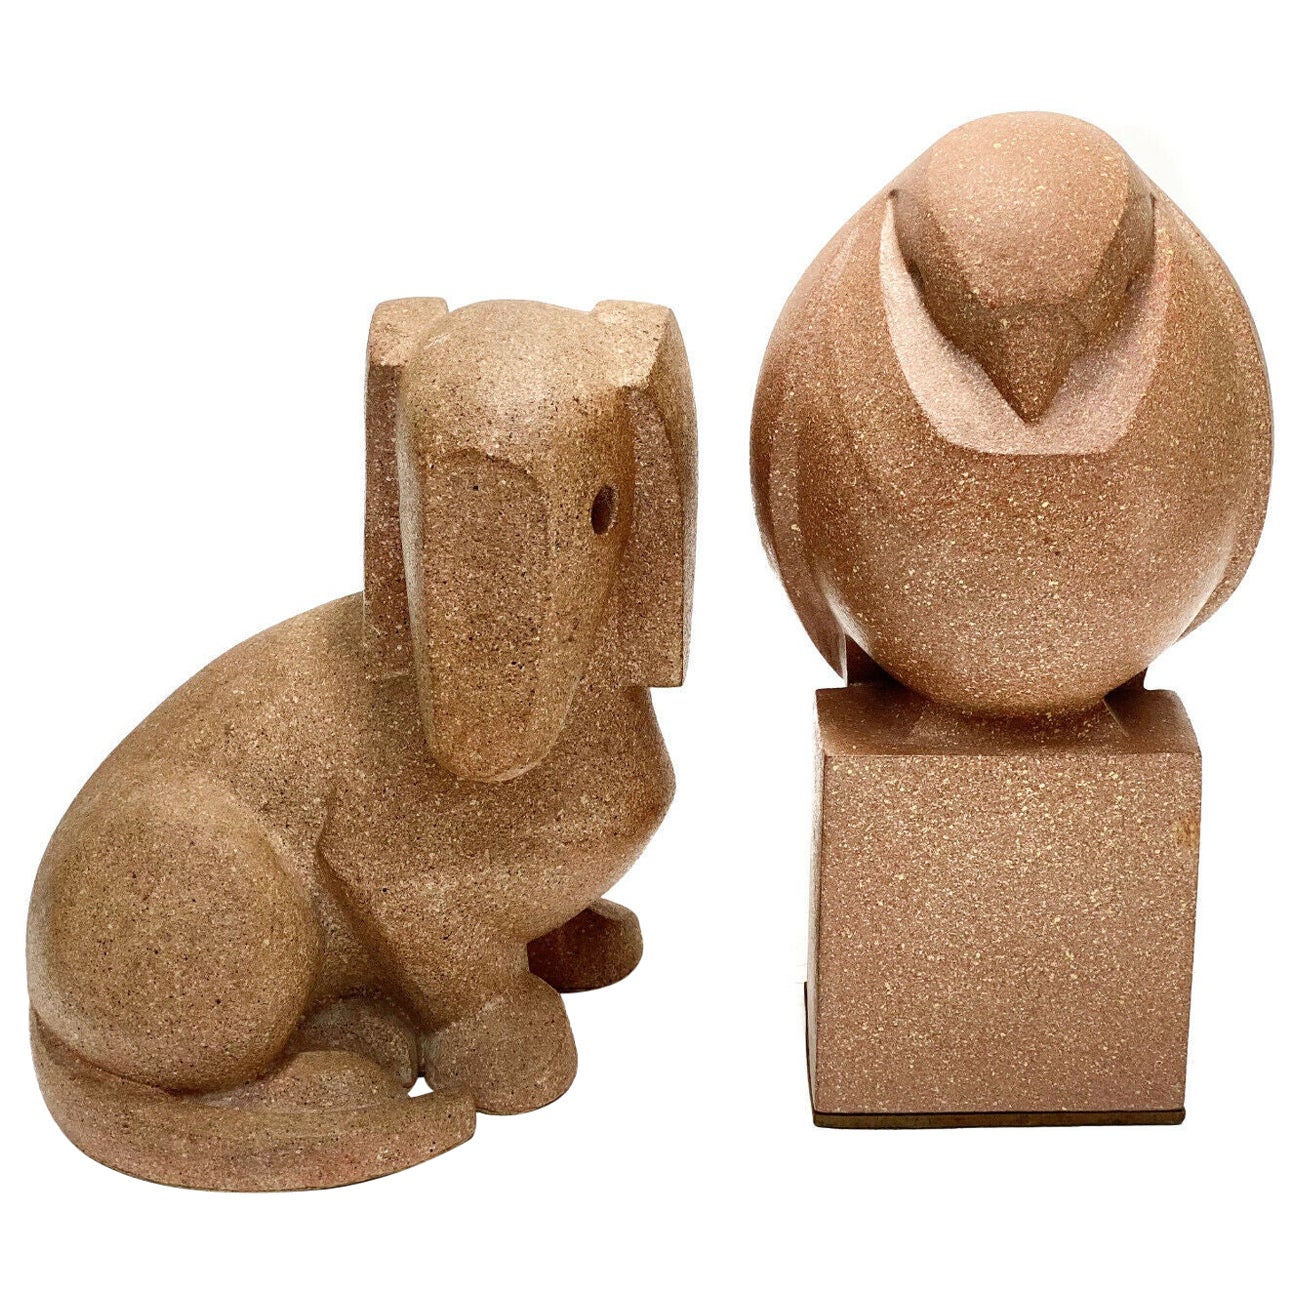 Keramik-Figuren mit Hund und Eule, signiert, von Mimi Murphey